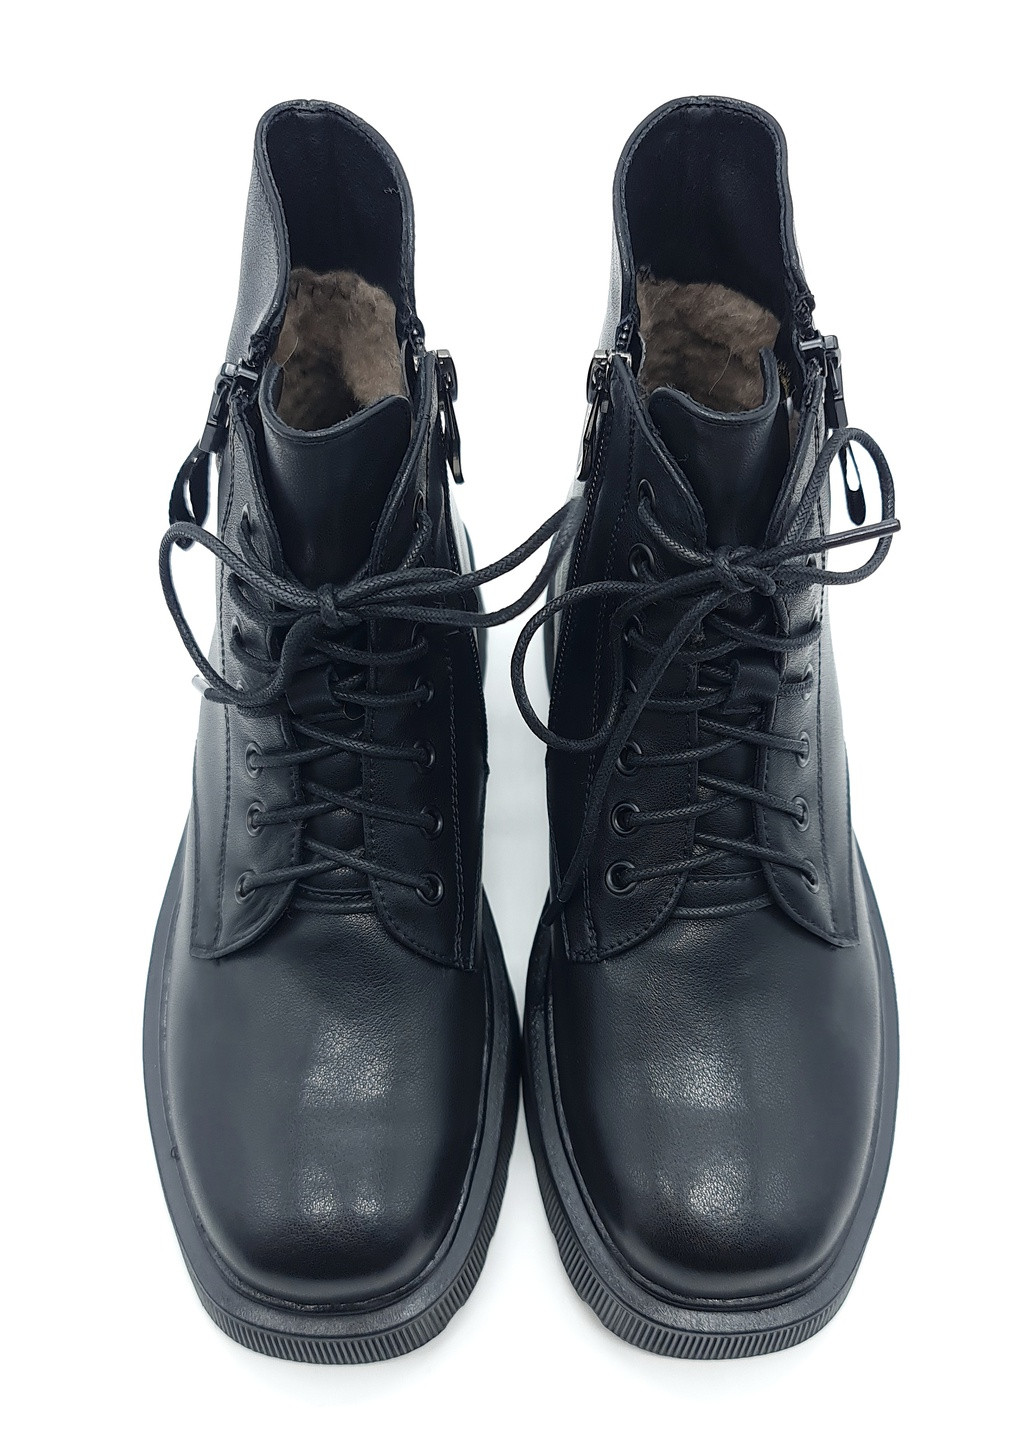 Осенние женские ботинки зимние черные кожаные lm-19-2 235 мм(р) Lino Marano